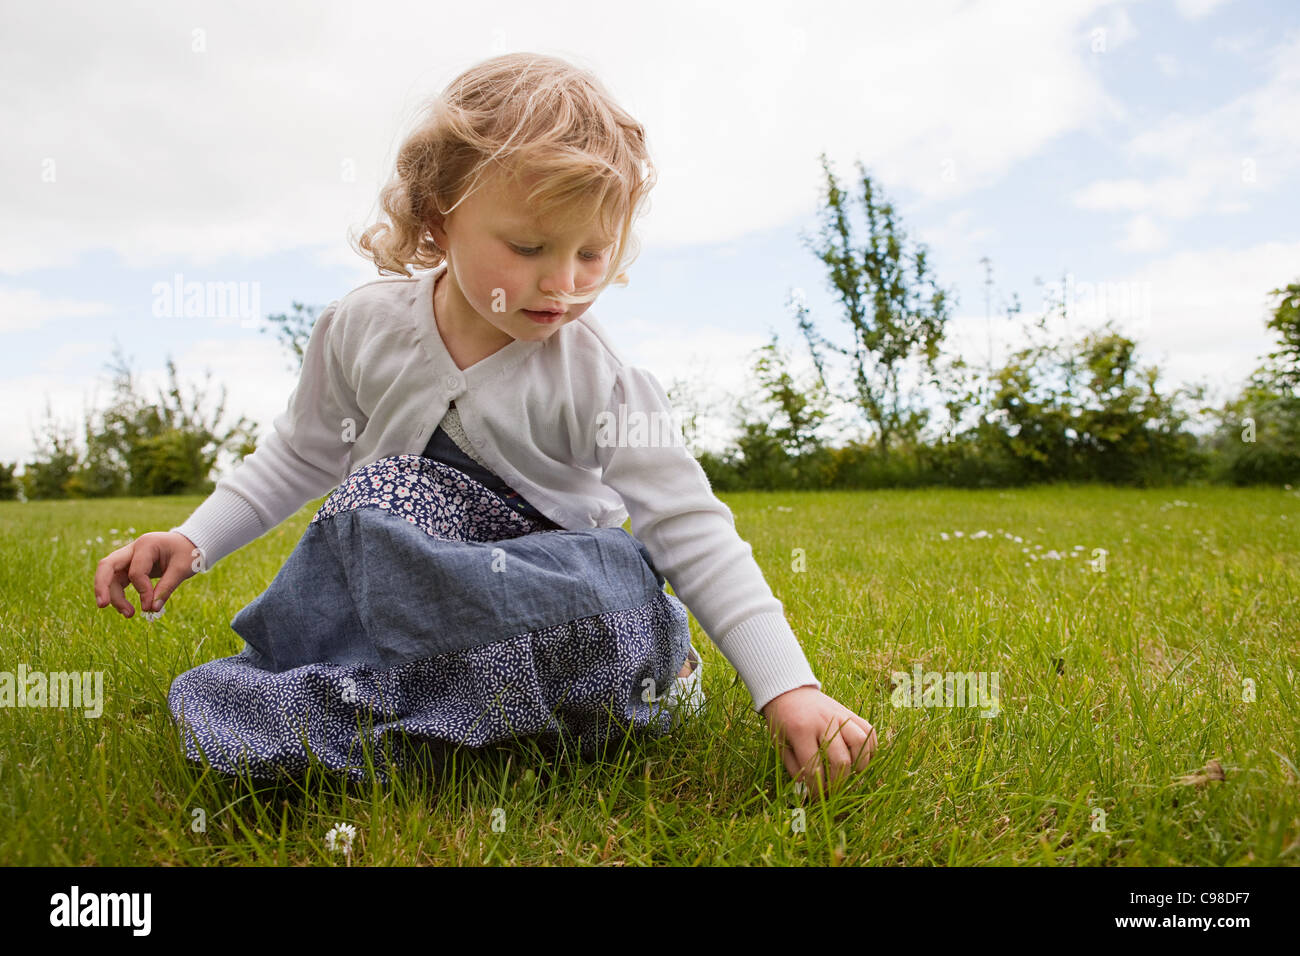 Girl picking daisies Stock Photo